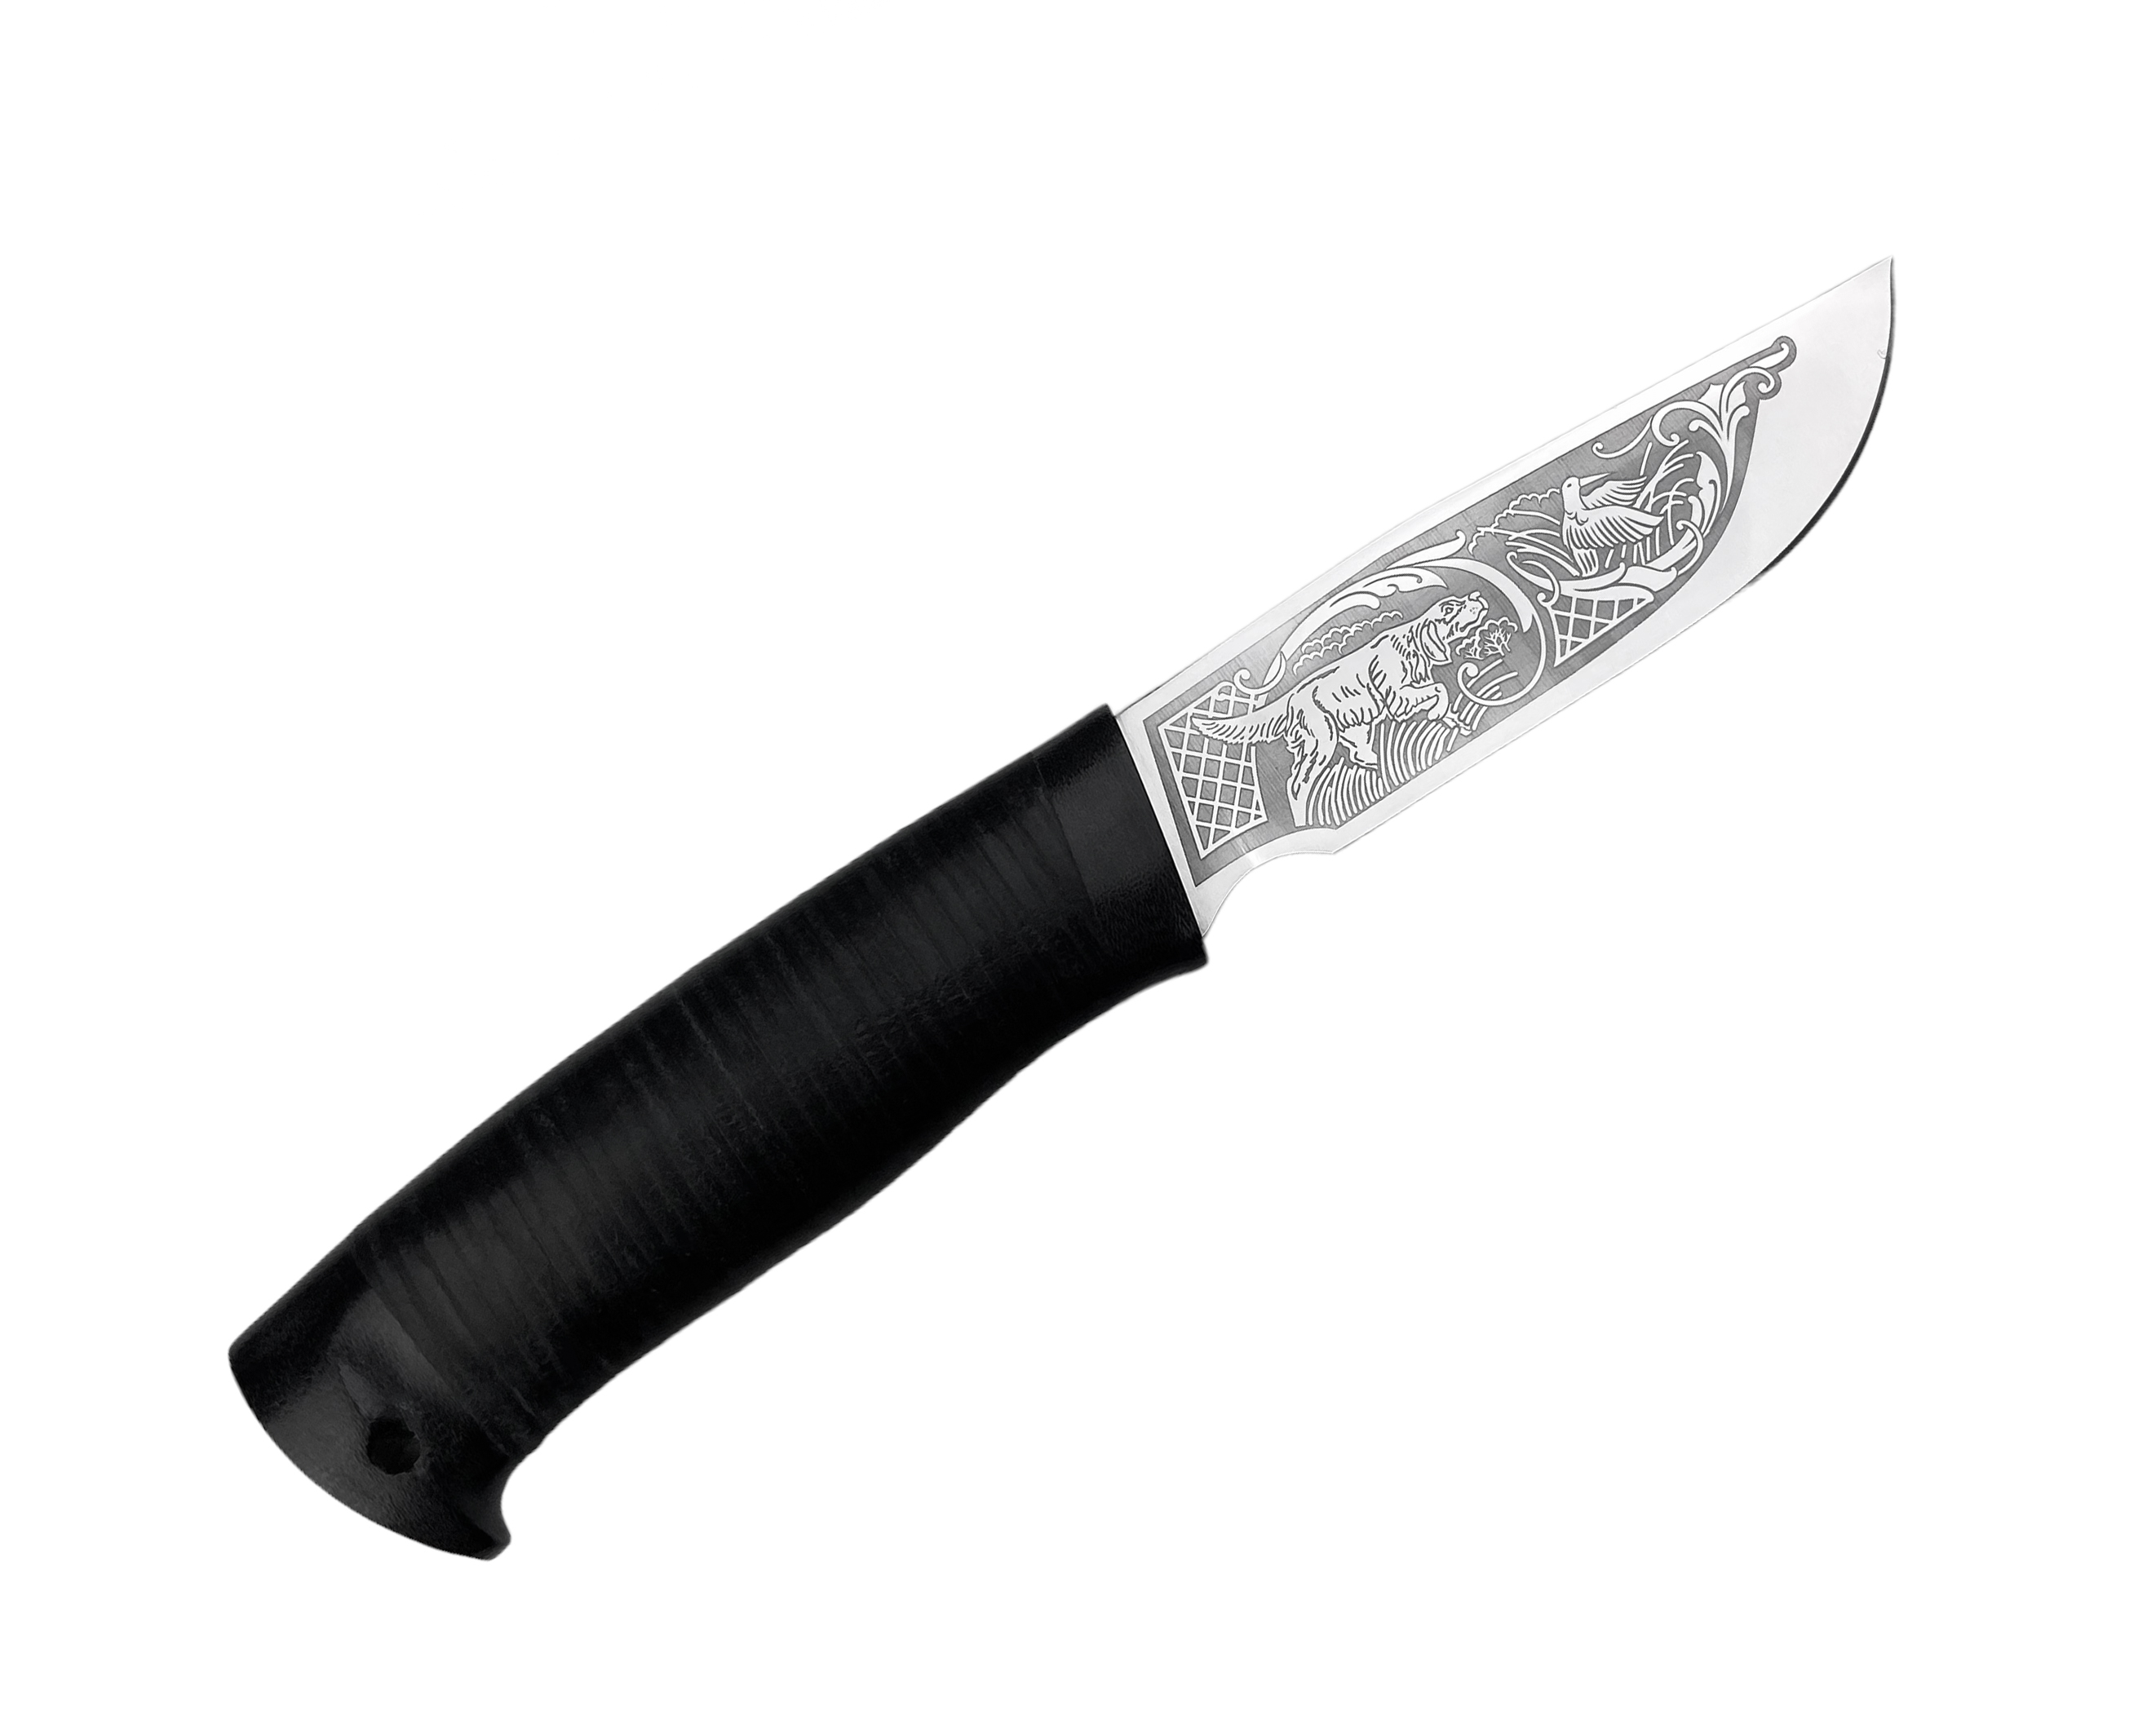 Нож Росоружие Сталкер 2 ЭИ-107 кожа рисунок - фото 1